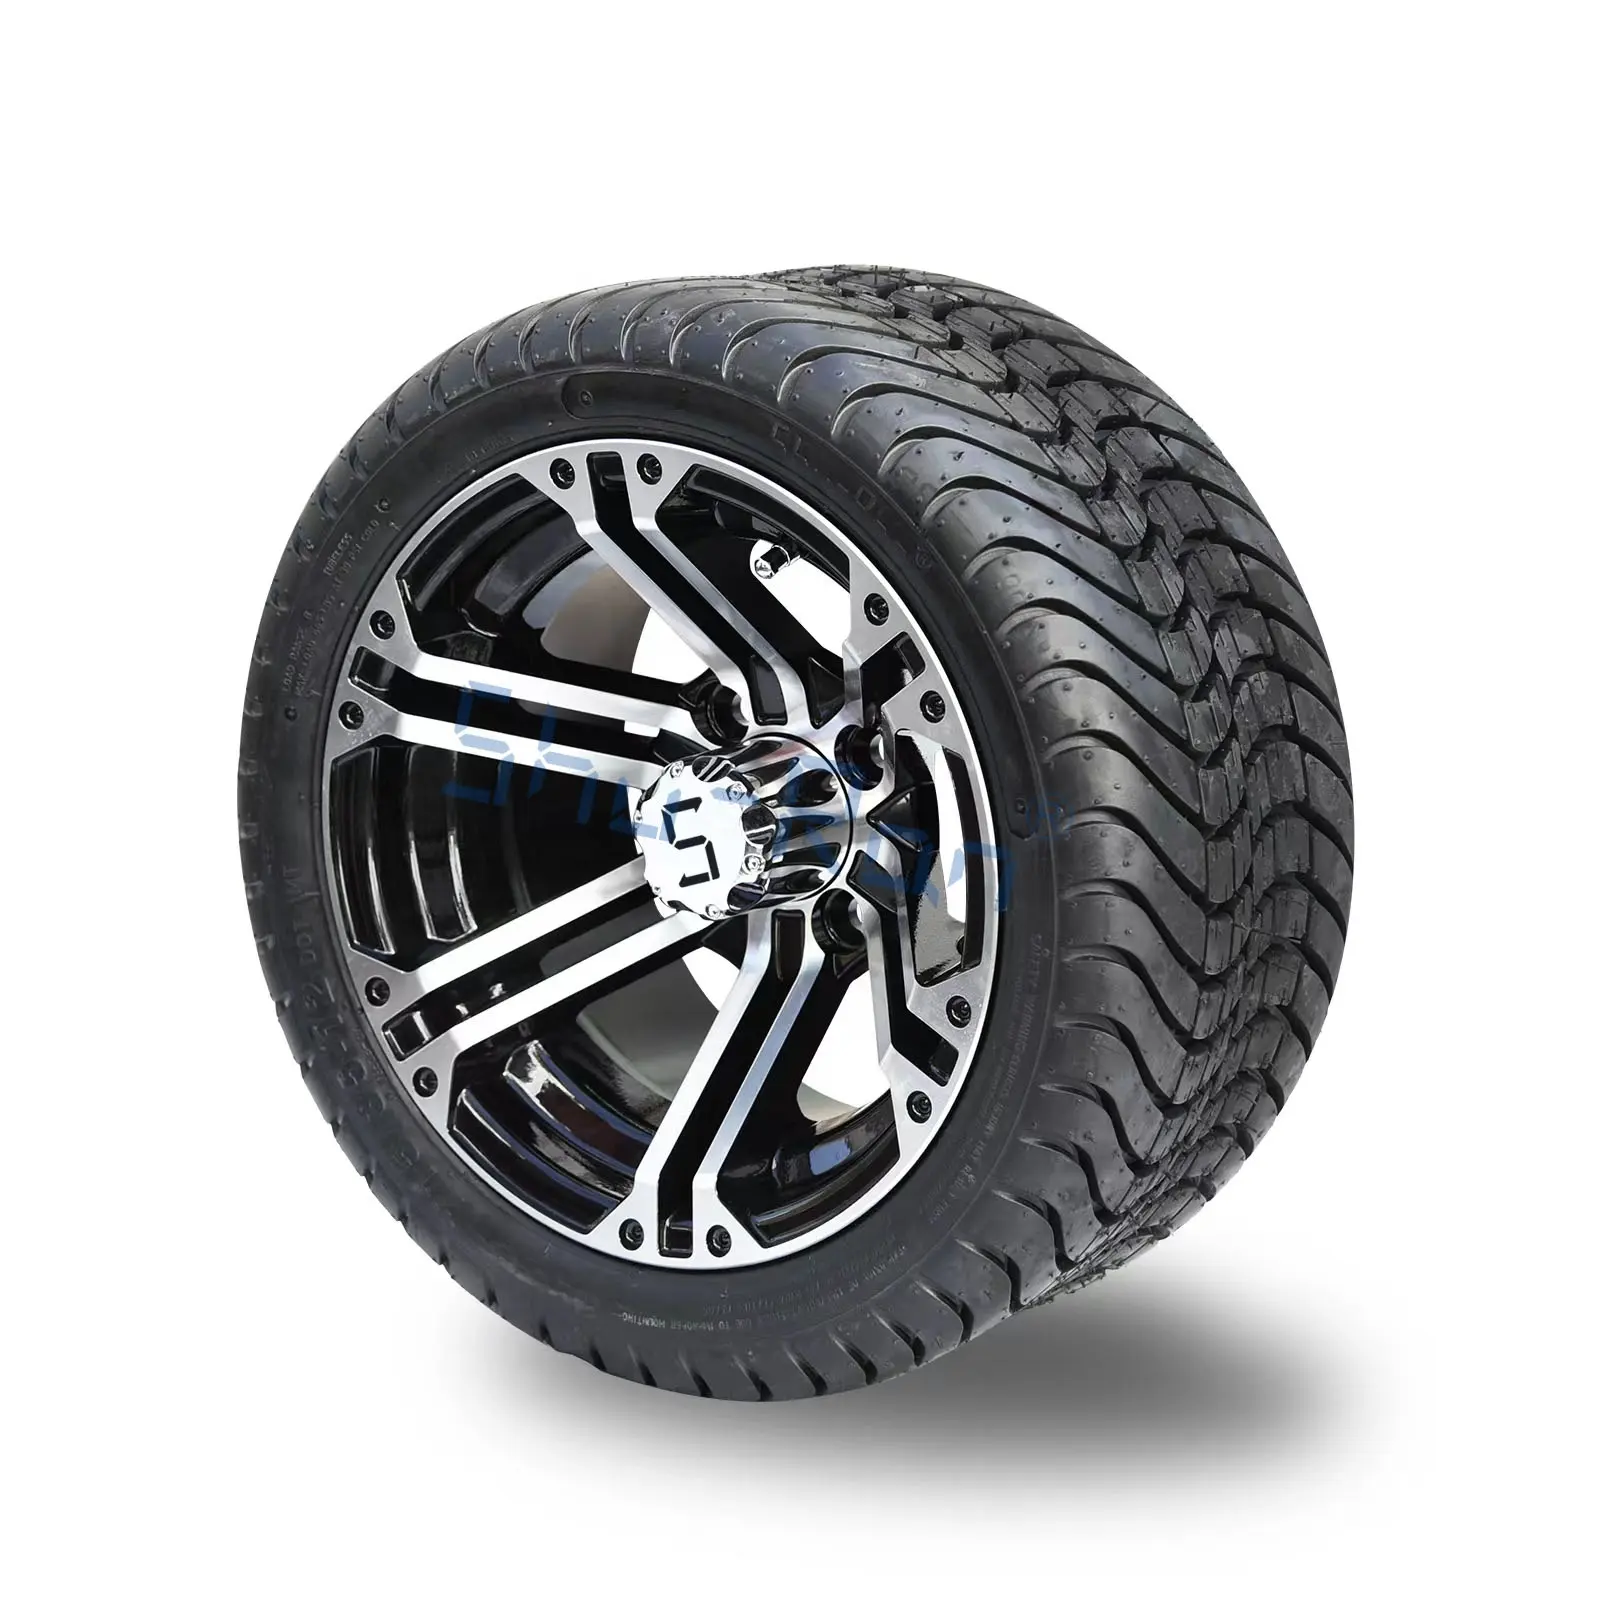 Shuran rodas de carrinhos de golfe 215/35-12 polegadas, rodas e pneu para ezgo, carro do clube, carrinho de golfe ymh